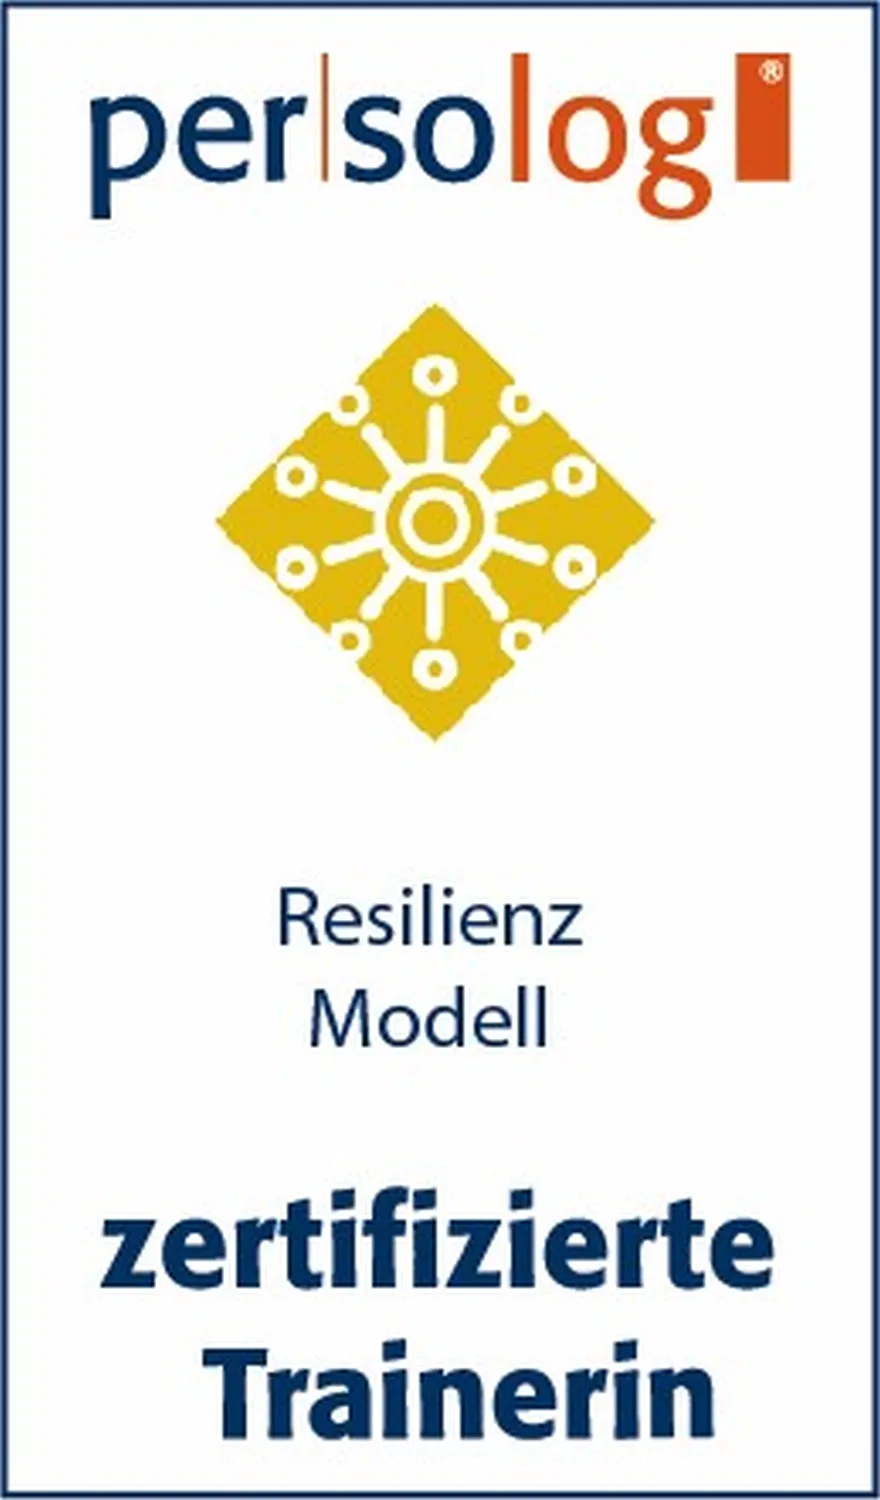 Resilienze Logo